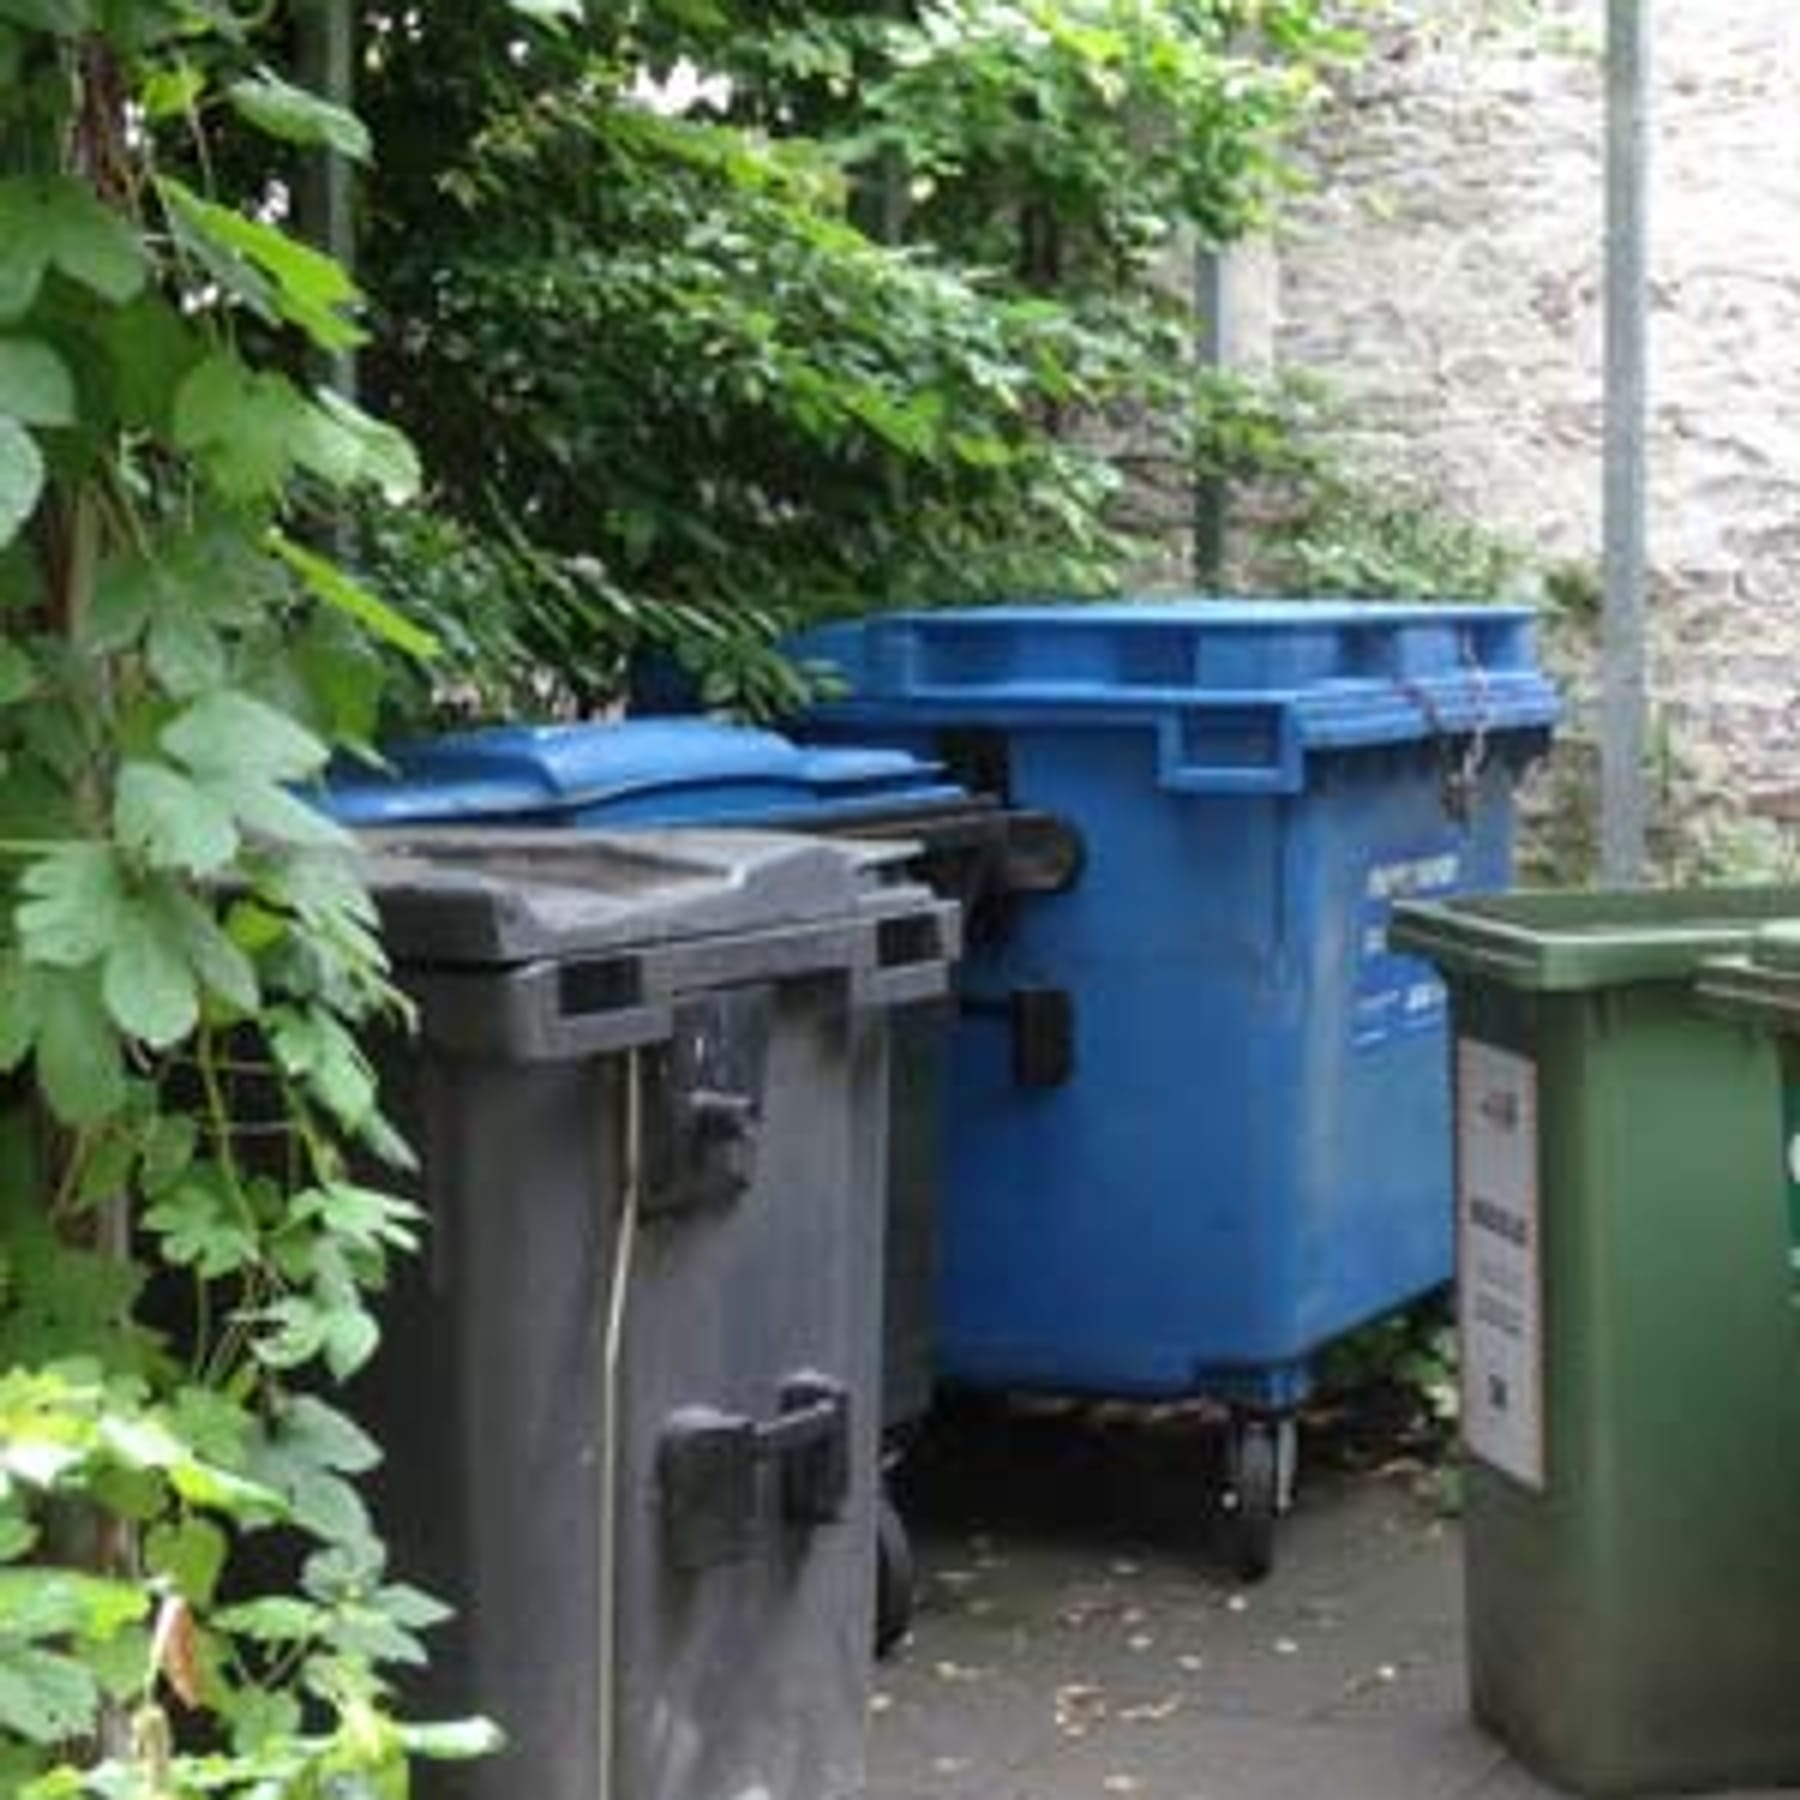 Zehn Tipps gegen stinkende Mülleimer